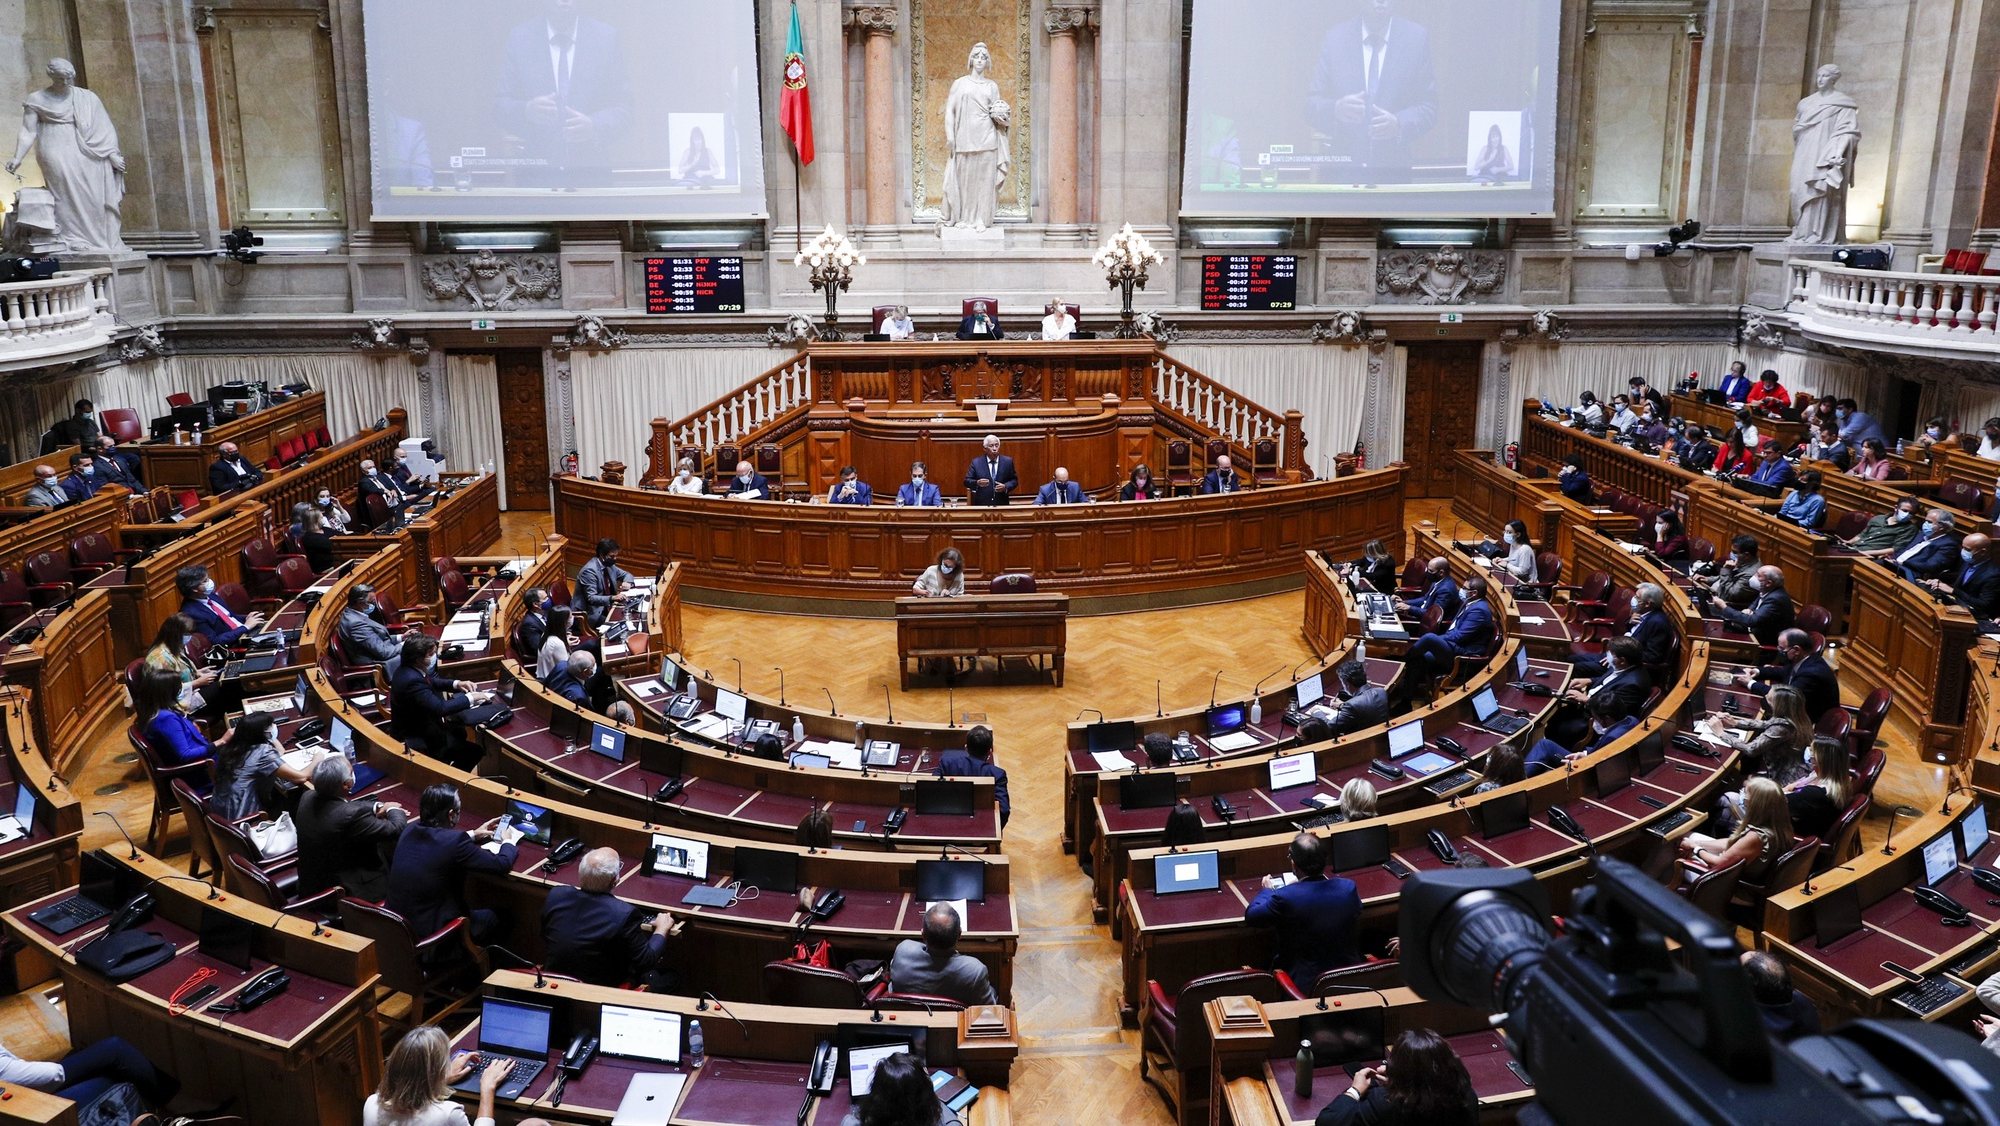 O primeiro-ministro, António Costa (C), intervém durante o debate sobre política geral, na Assembleia da República, em Lisboa, 07 de outubro de 2021. ANTÓNIO COTRIM/LUSA